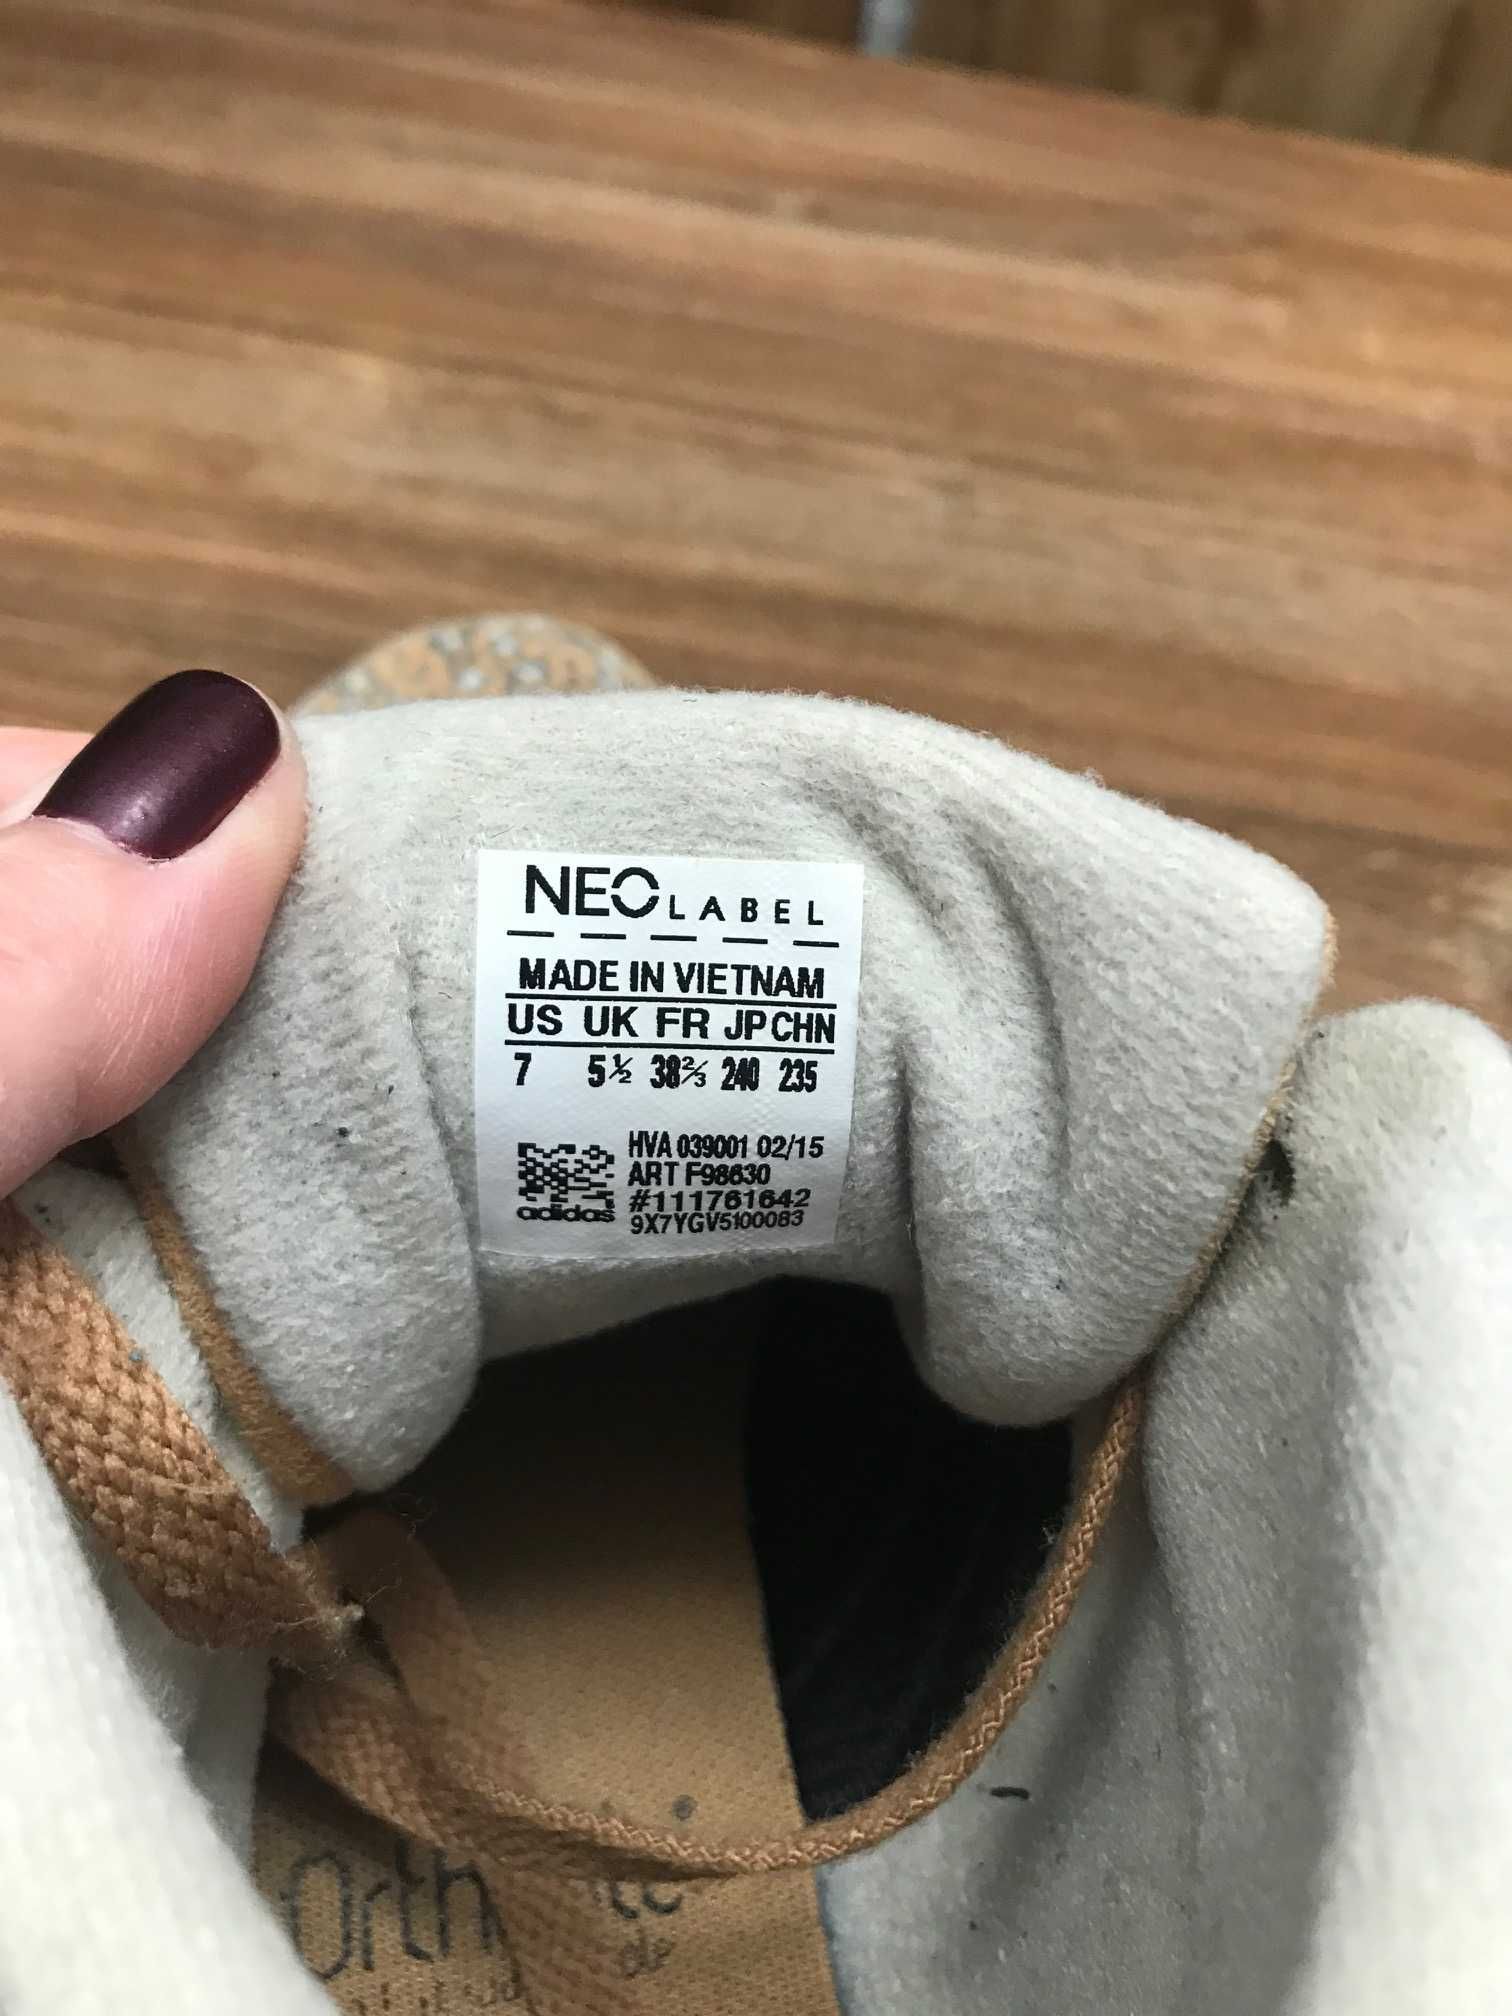 Adidas Neo Label Ortholite buty do kostki w panterkę rozm. 38 2/3